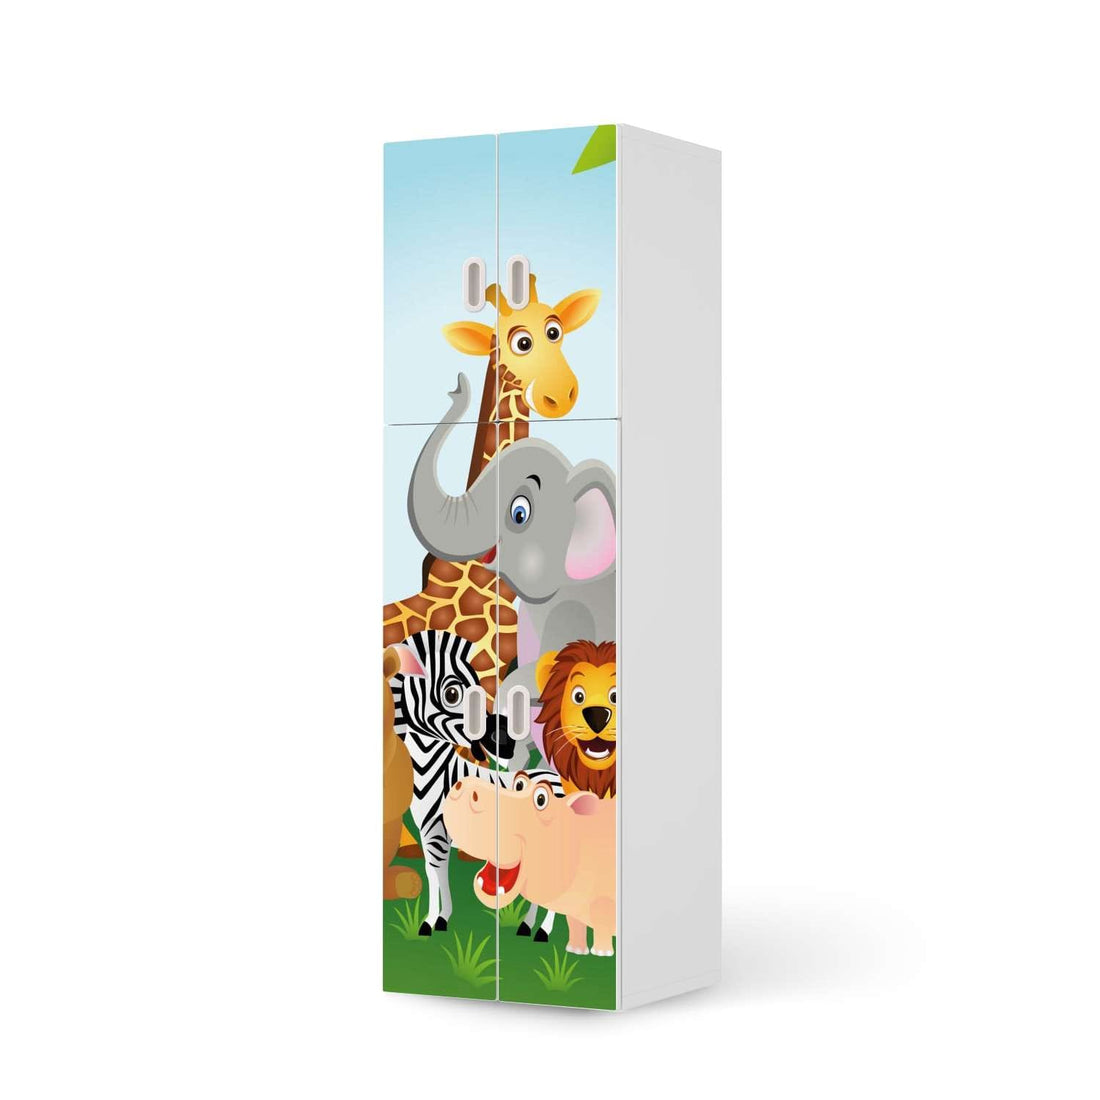 Selbstklebende Folie Wild Animals - IKEA Stuva / Fritids kombiniert - 2 große Türen und 2 kleine Türen  - weiss